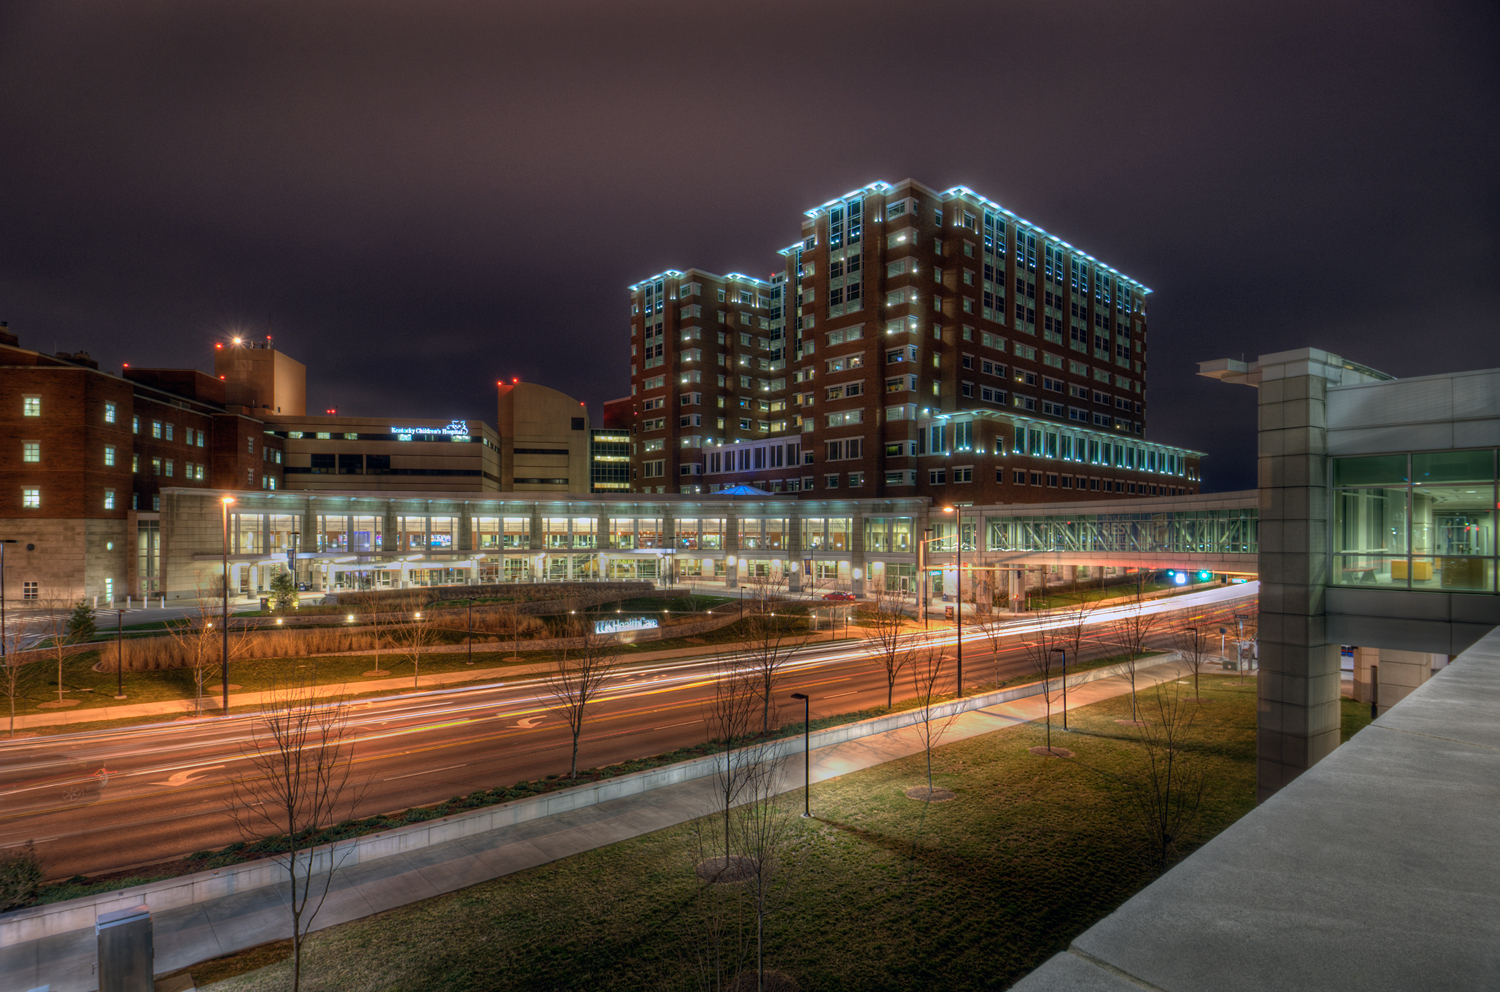 Albert B. Chandler Hospital street view.